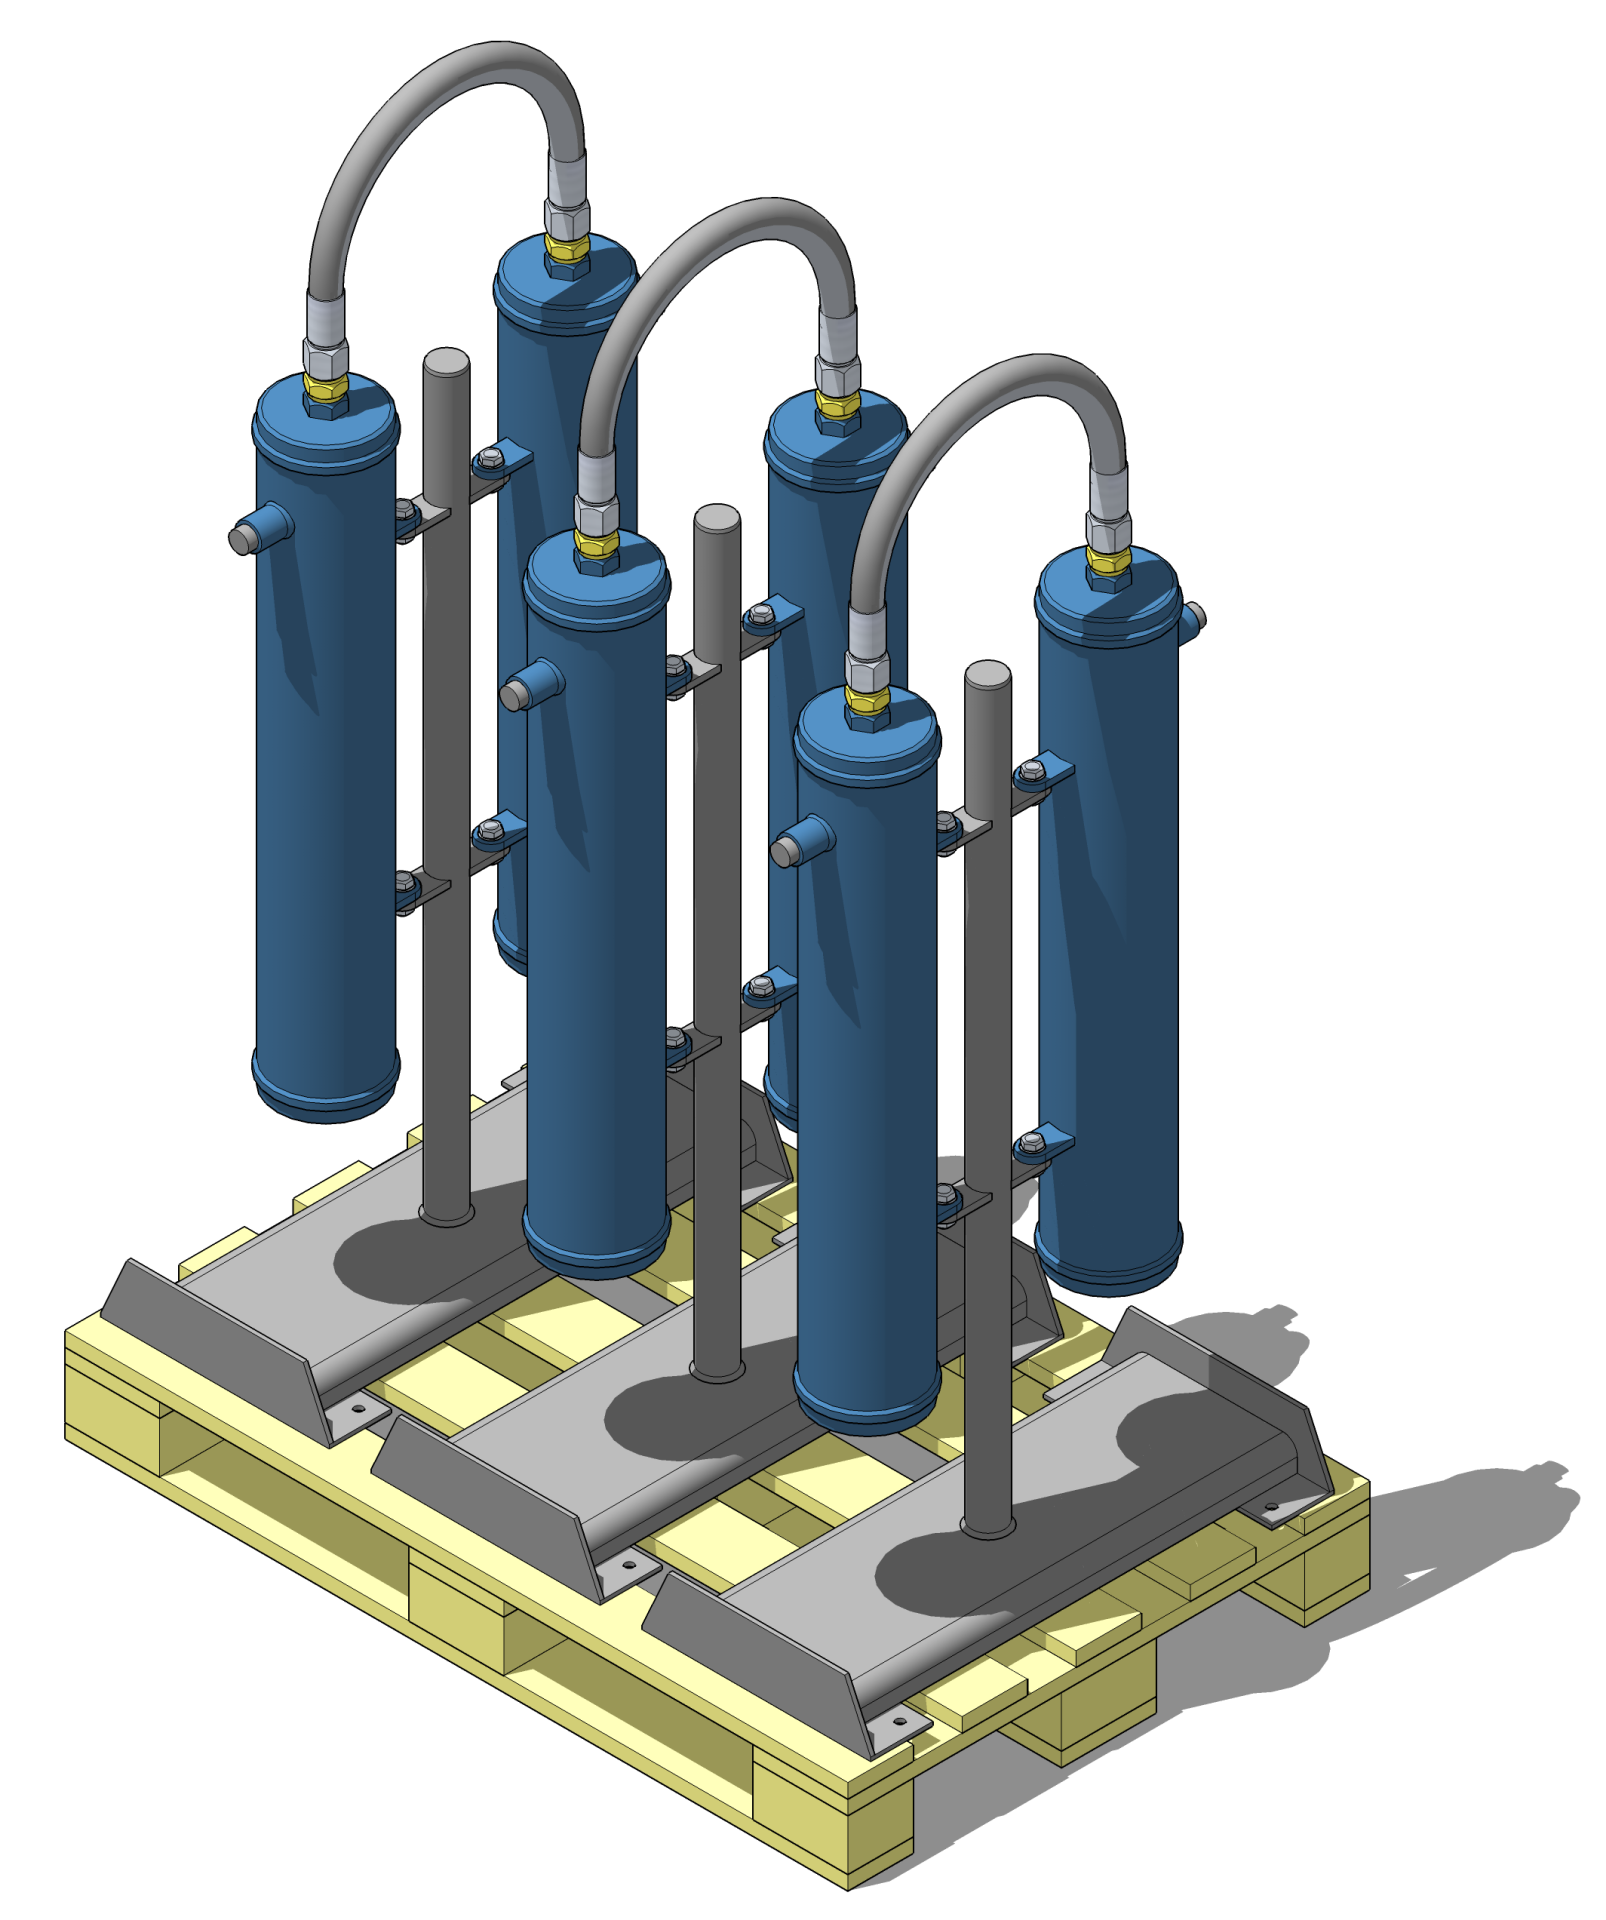 3D модель размещения фильтрационных модулей ФМ-300/10 на поддоне (паллете)